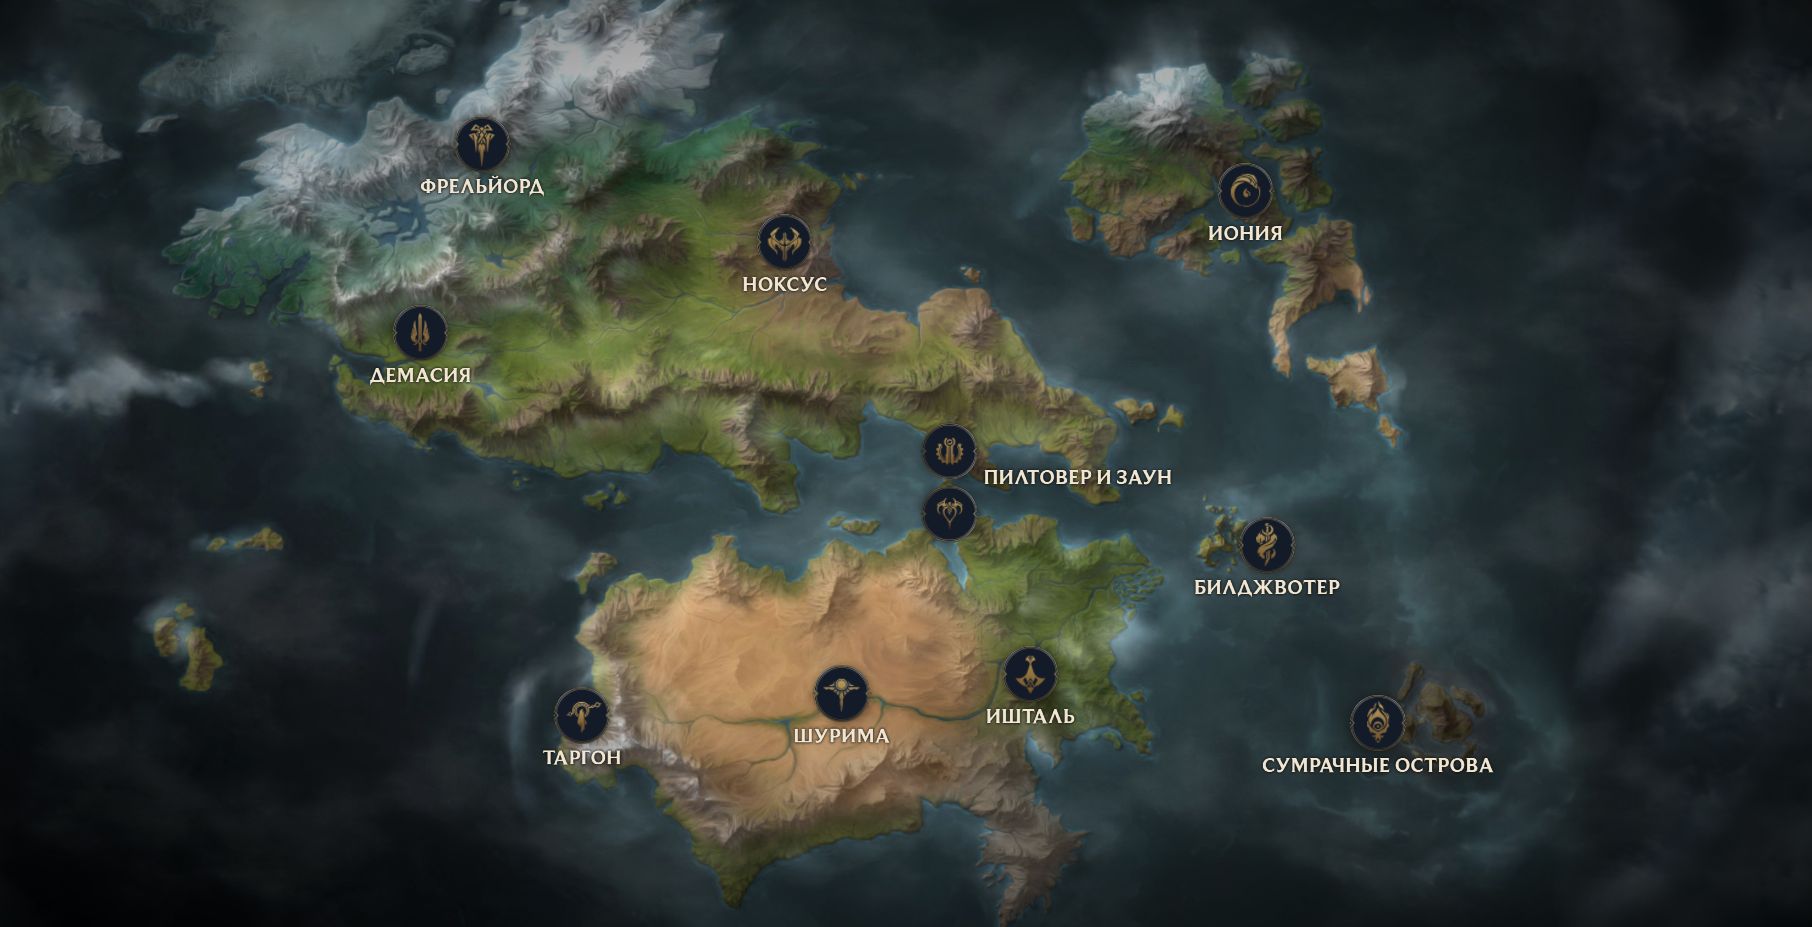 Источник: map.leagueoflegends.com - интерактивная карта мира Рунтерры 